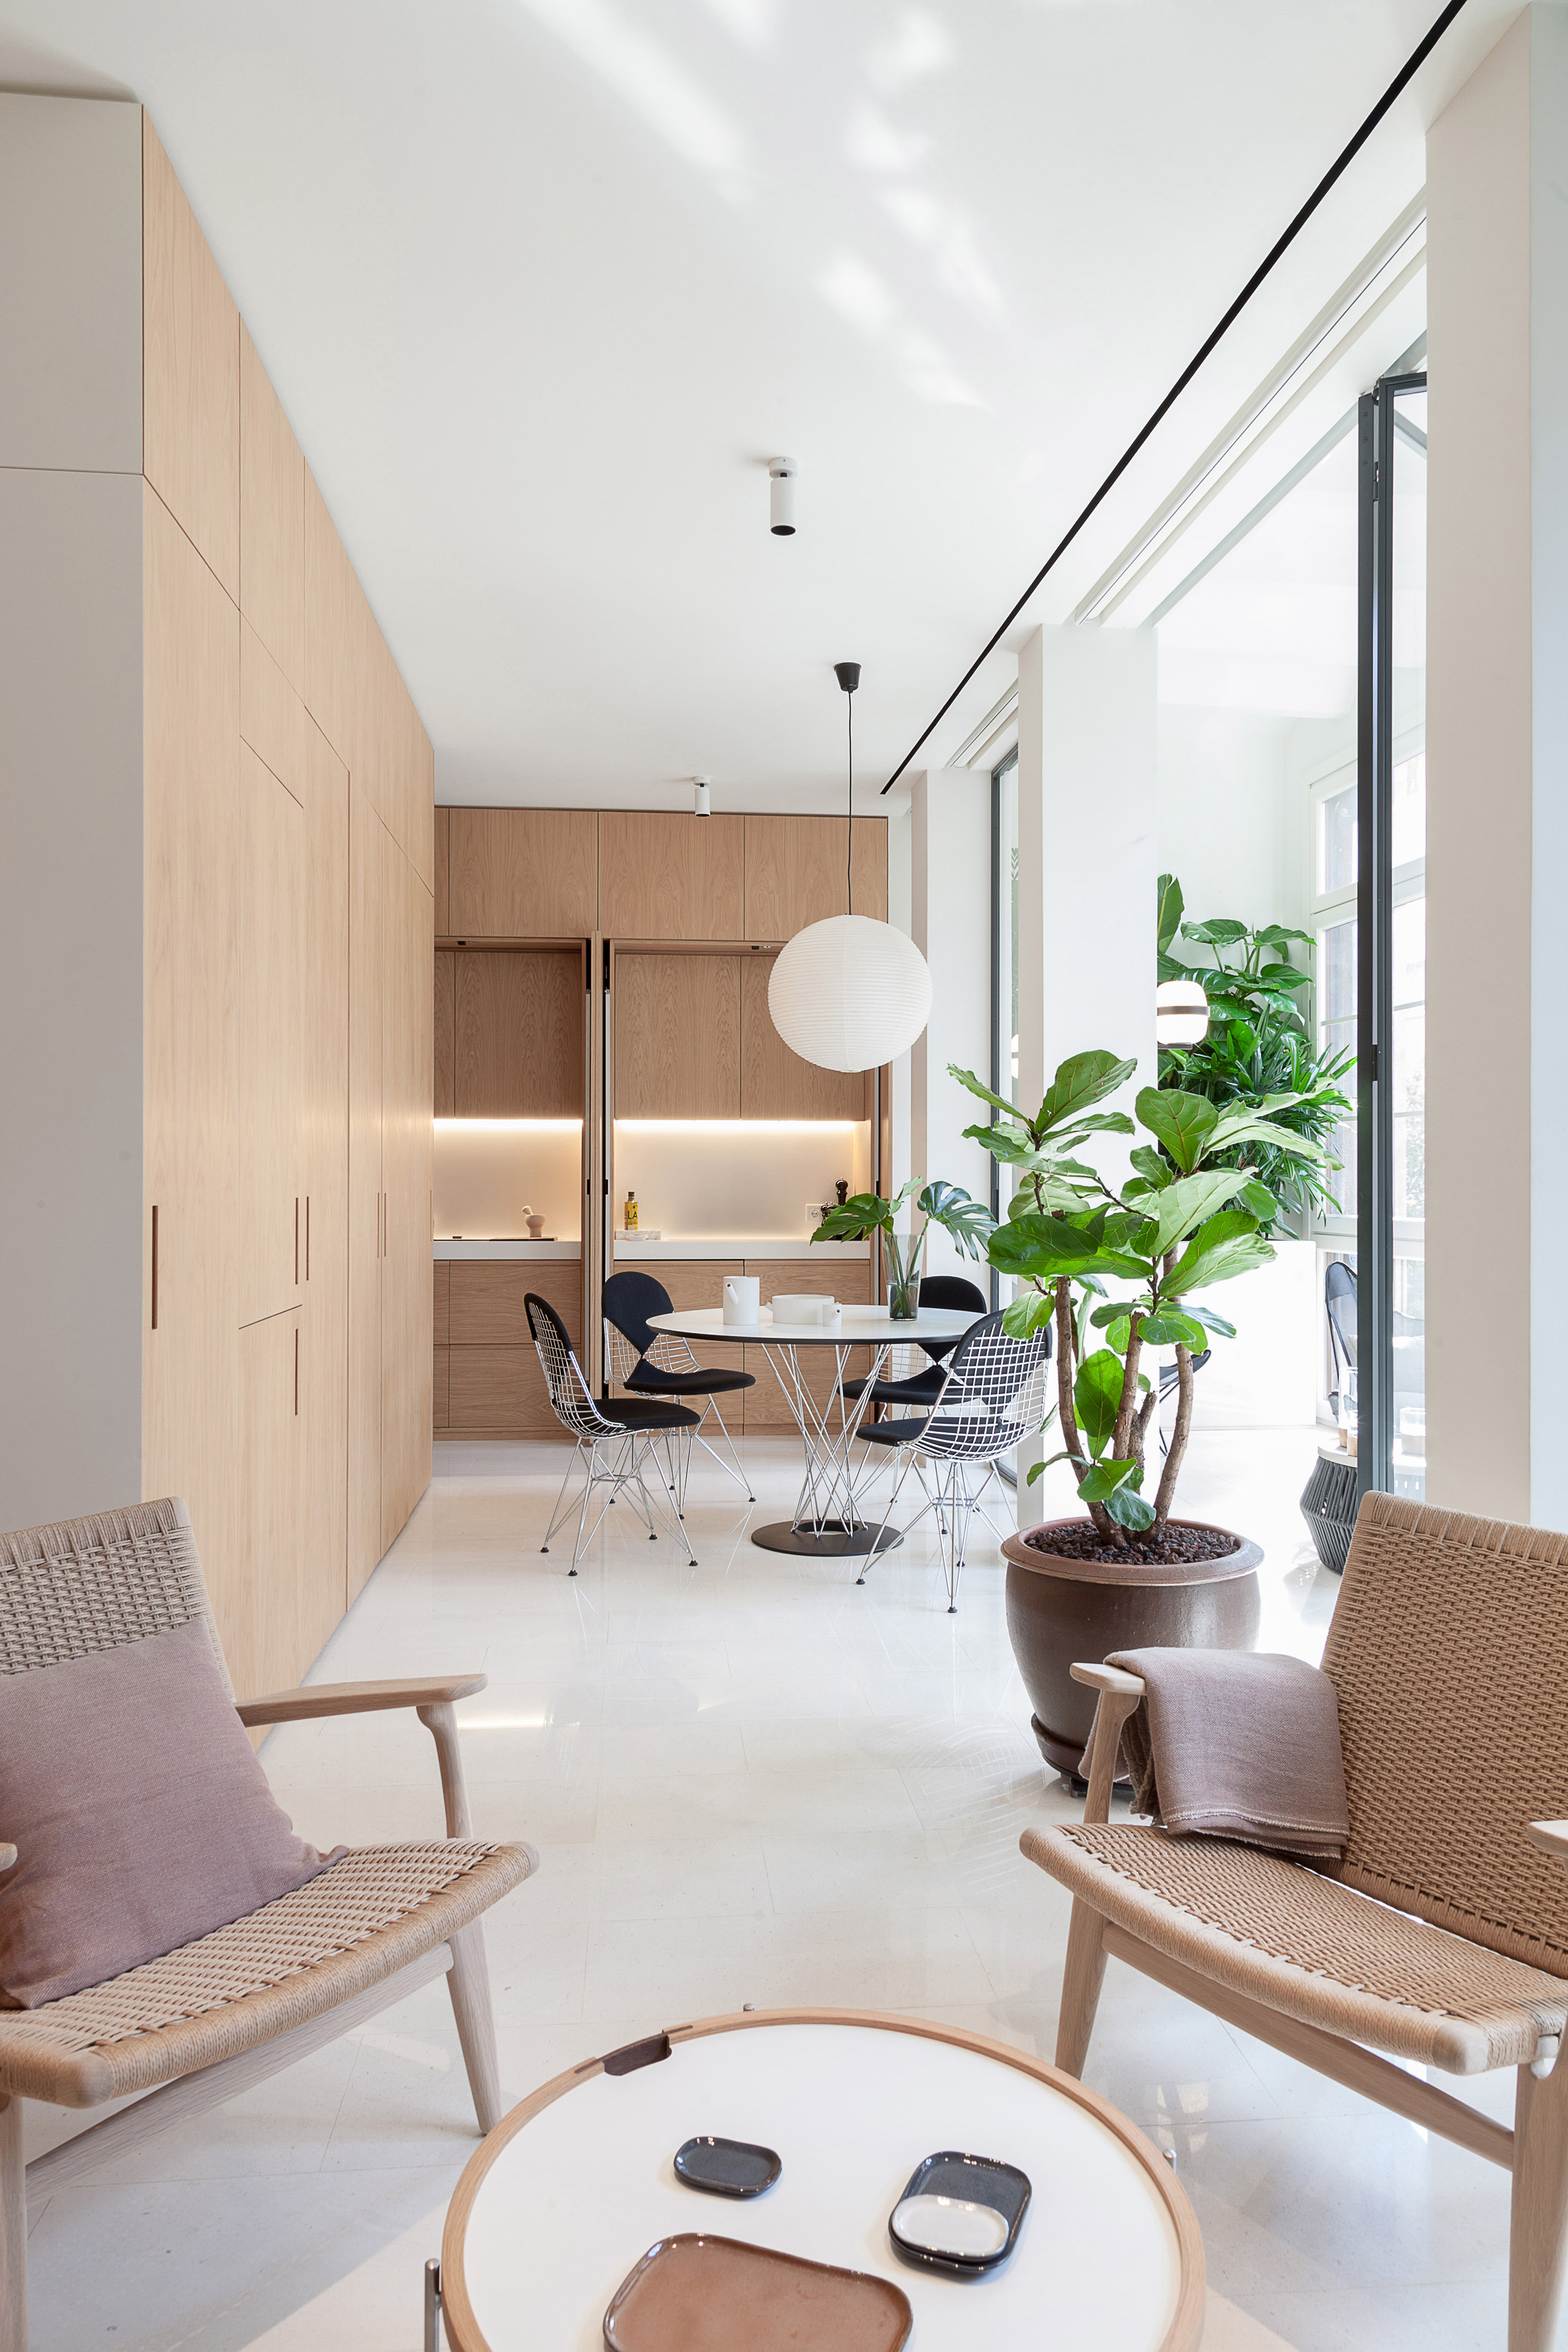 Interiors of Argentona Apartment, designed by YLAB Arquitectos